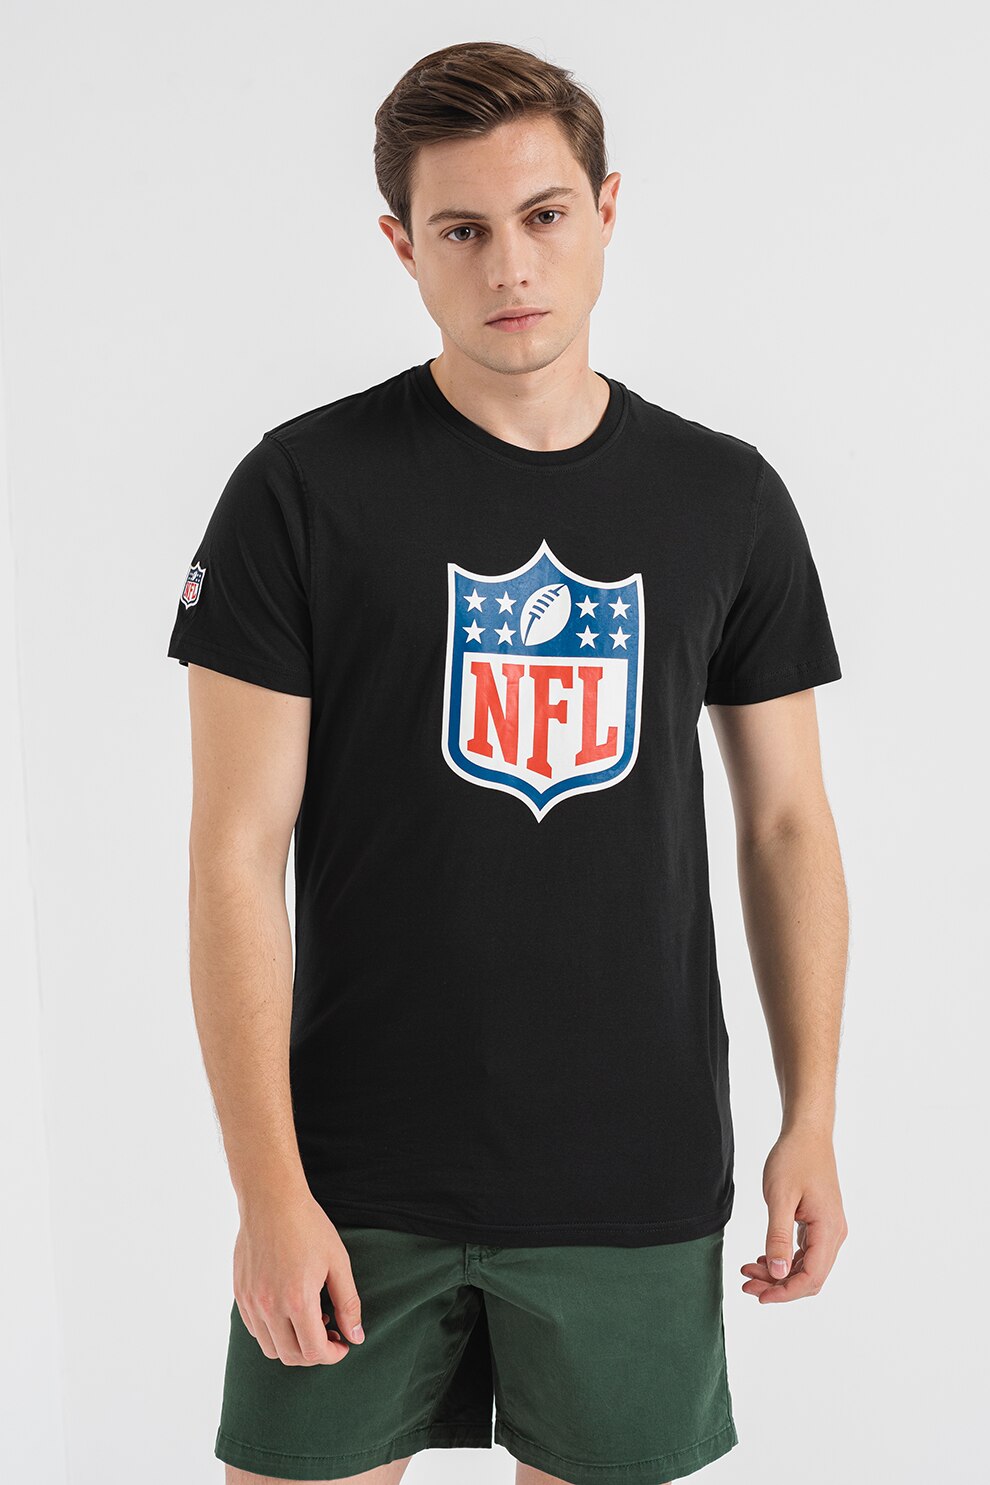 New Era, Tricou cu logo NFL, Rosu, Negru, Alb, XL